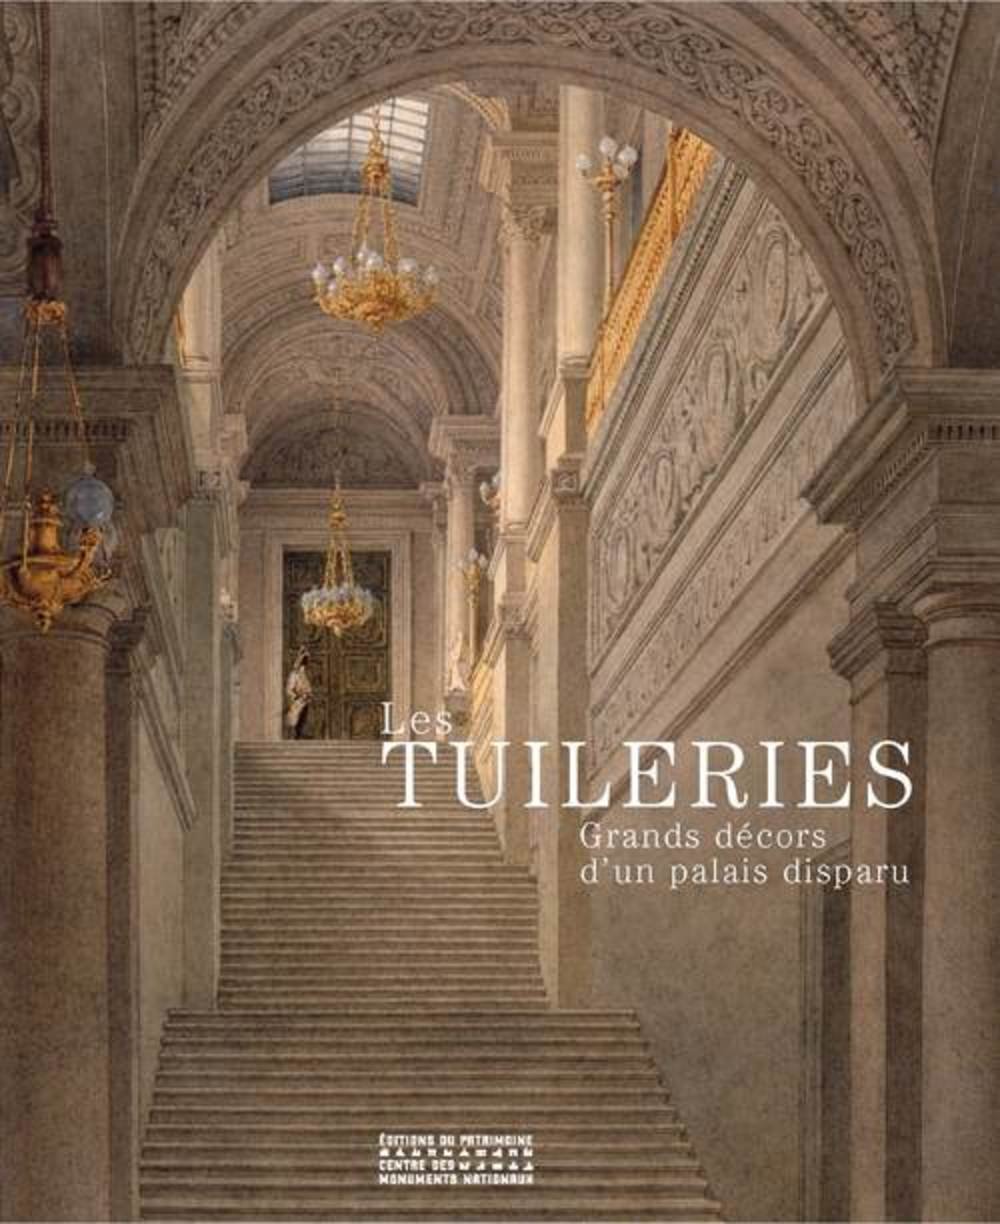 Les Tuileries. Grands décors d'un palais disparu, 2016, 288 p.